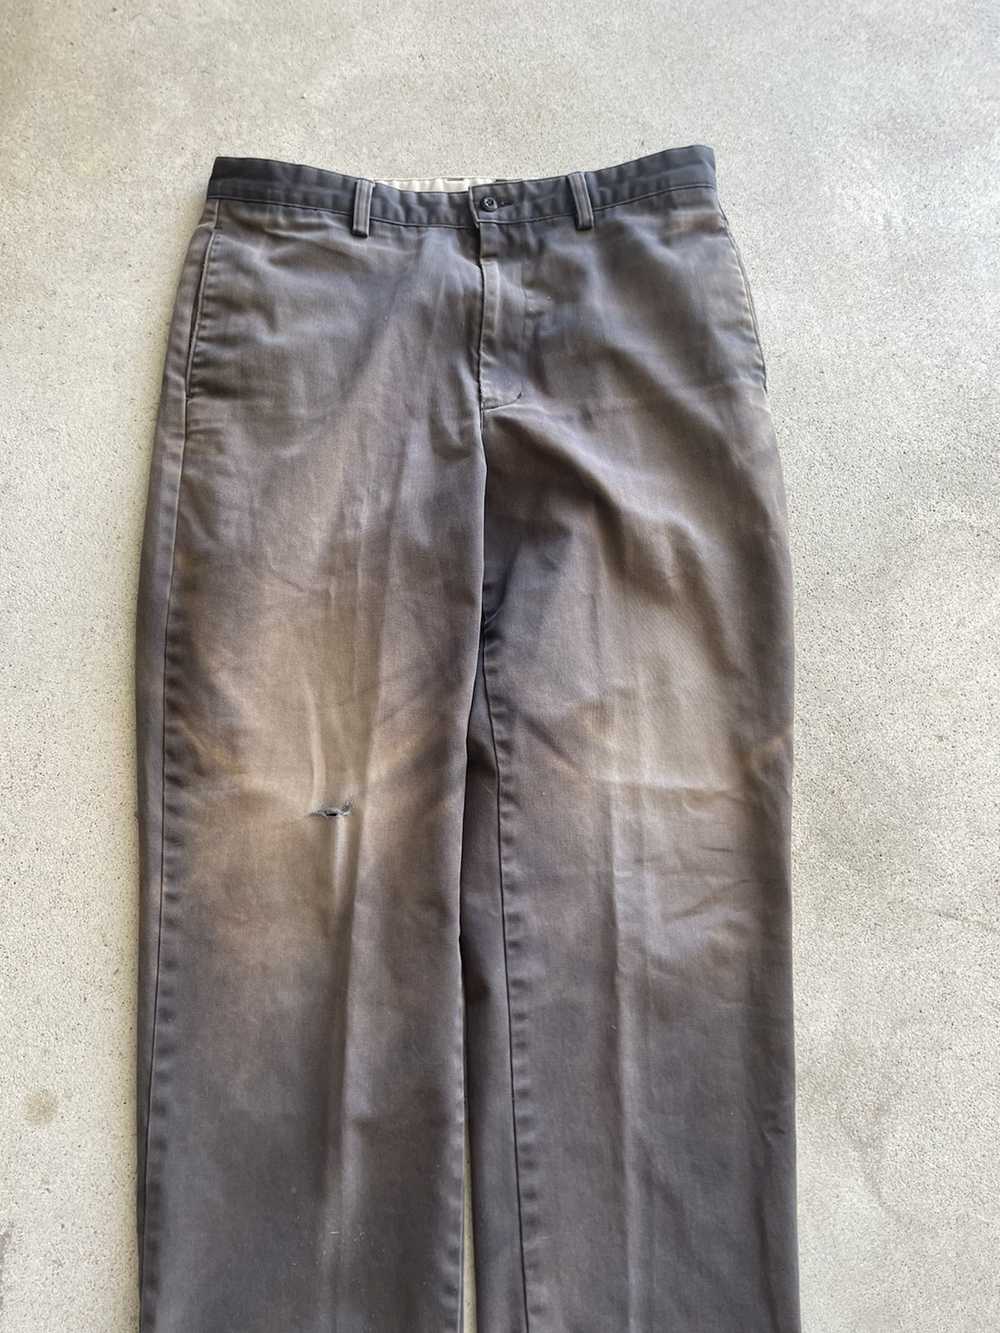 Vintage Vintage Sun Faded Khaki pants (34x29) - image 2